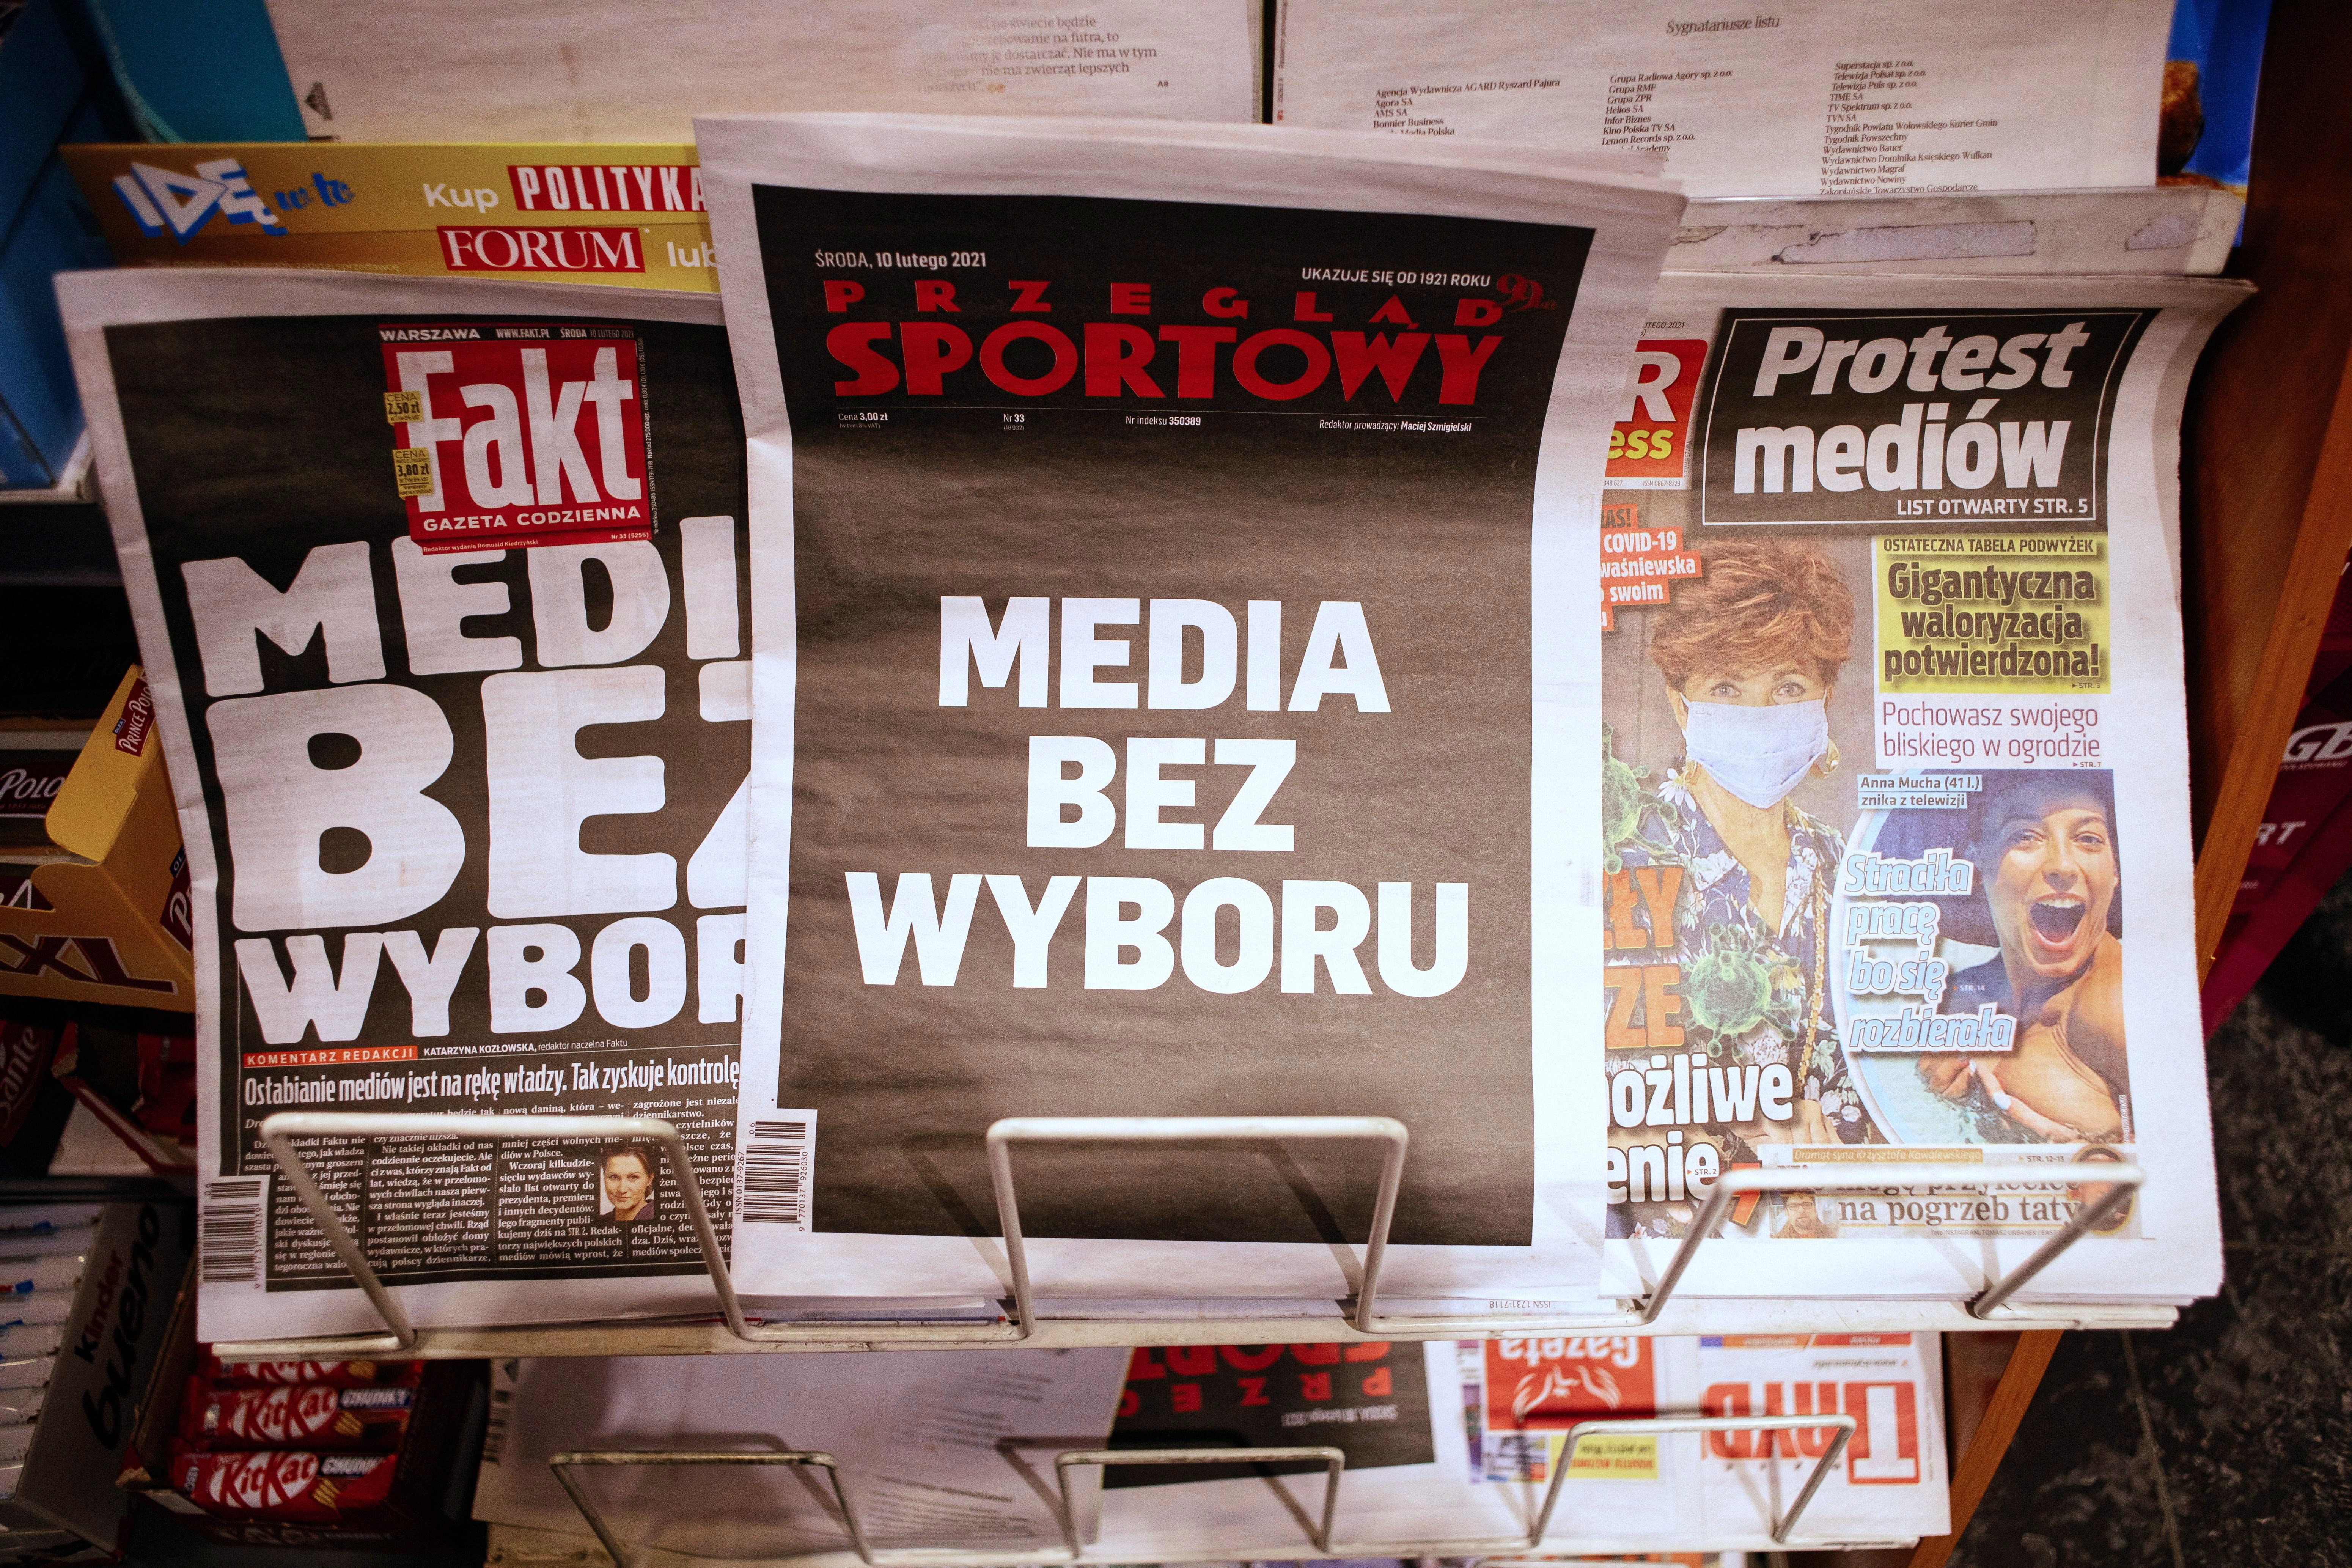 Már majdnem elfoglalta a lengyel kormány a vidéki lapokat, ám a bíróság most megakadályozhatja